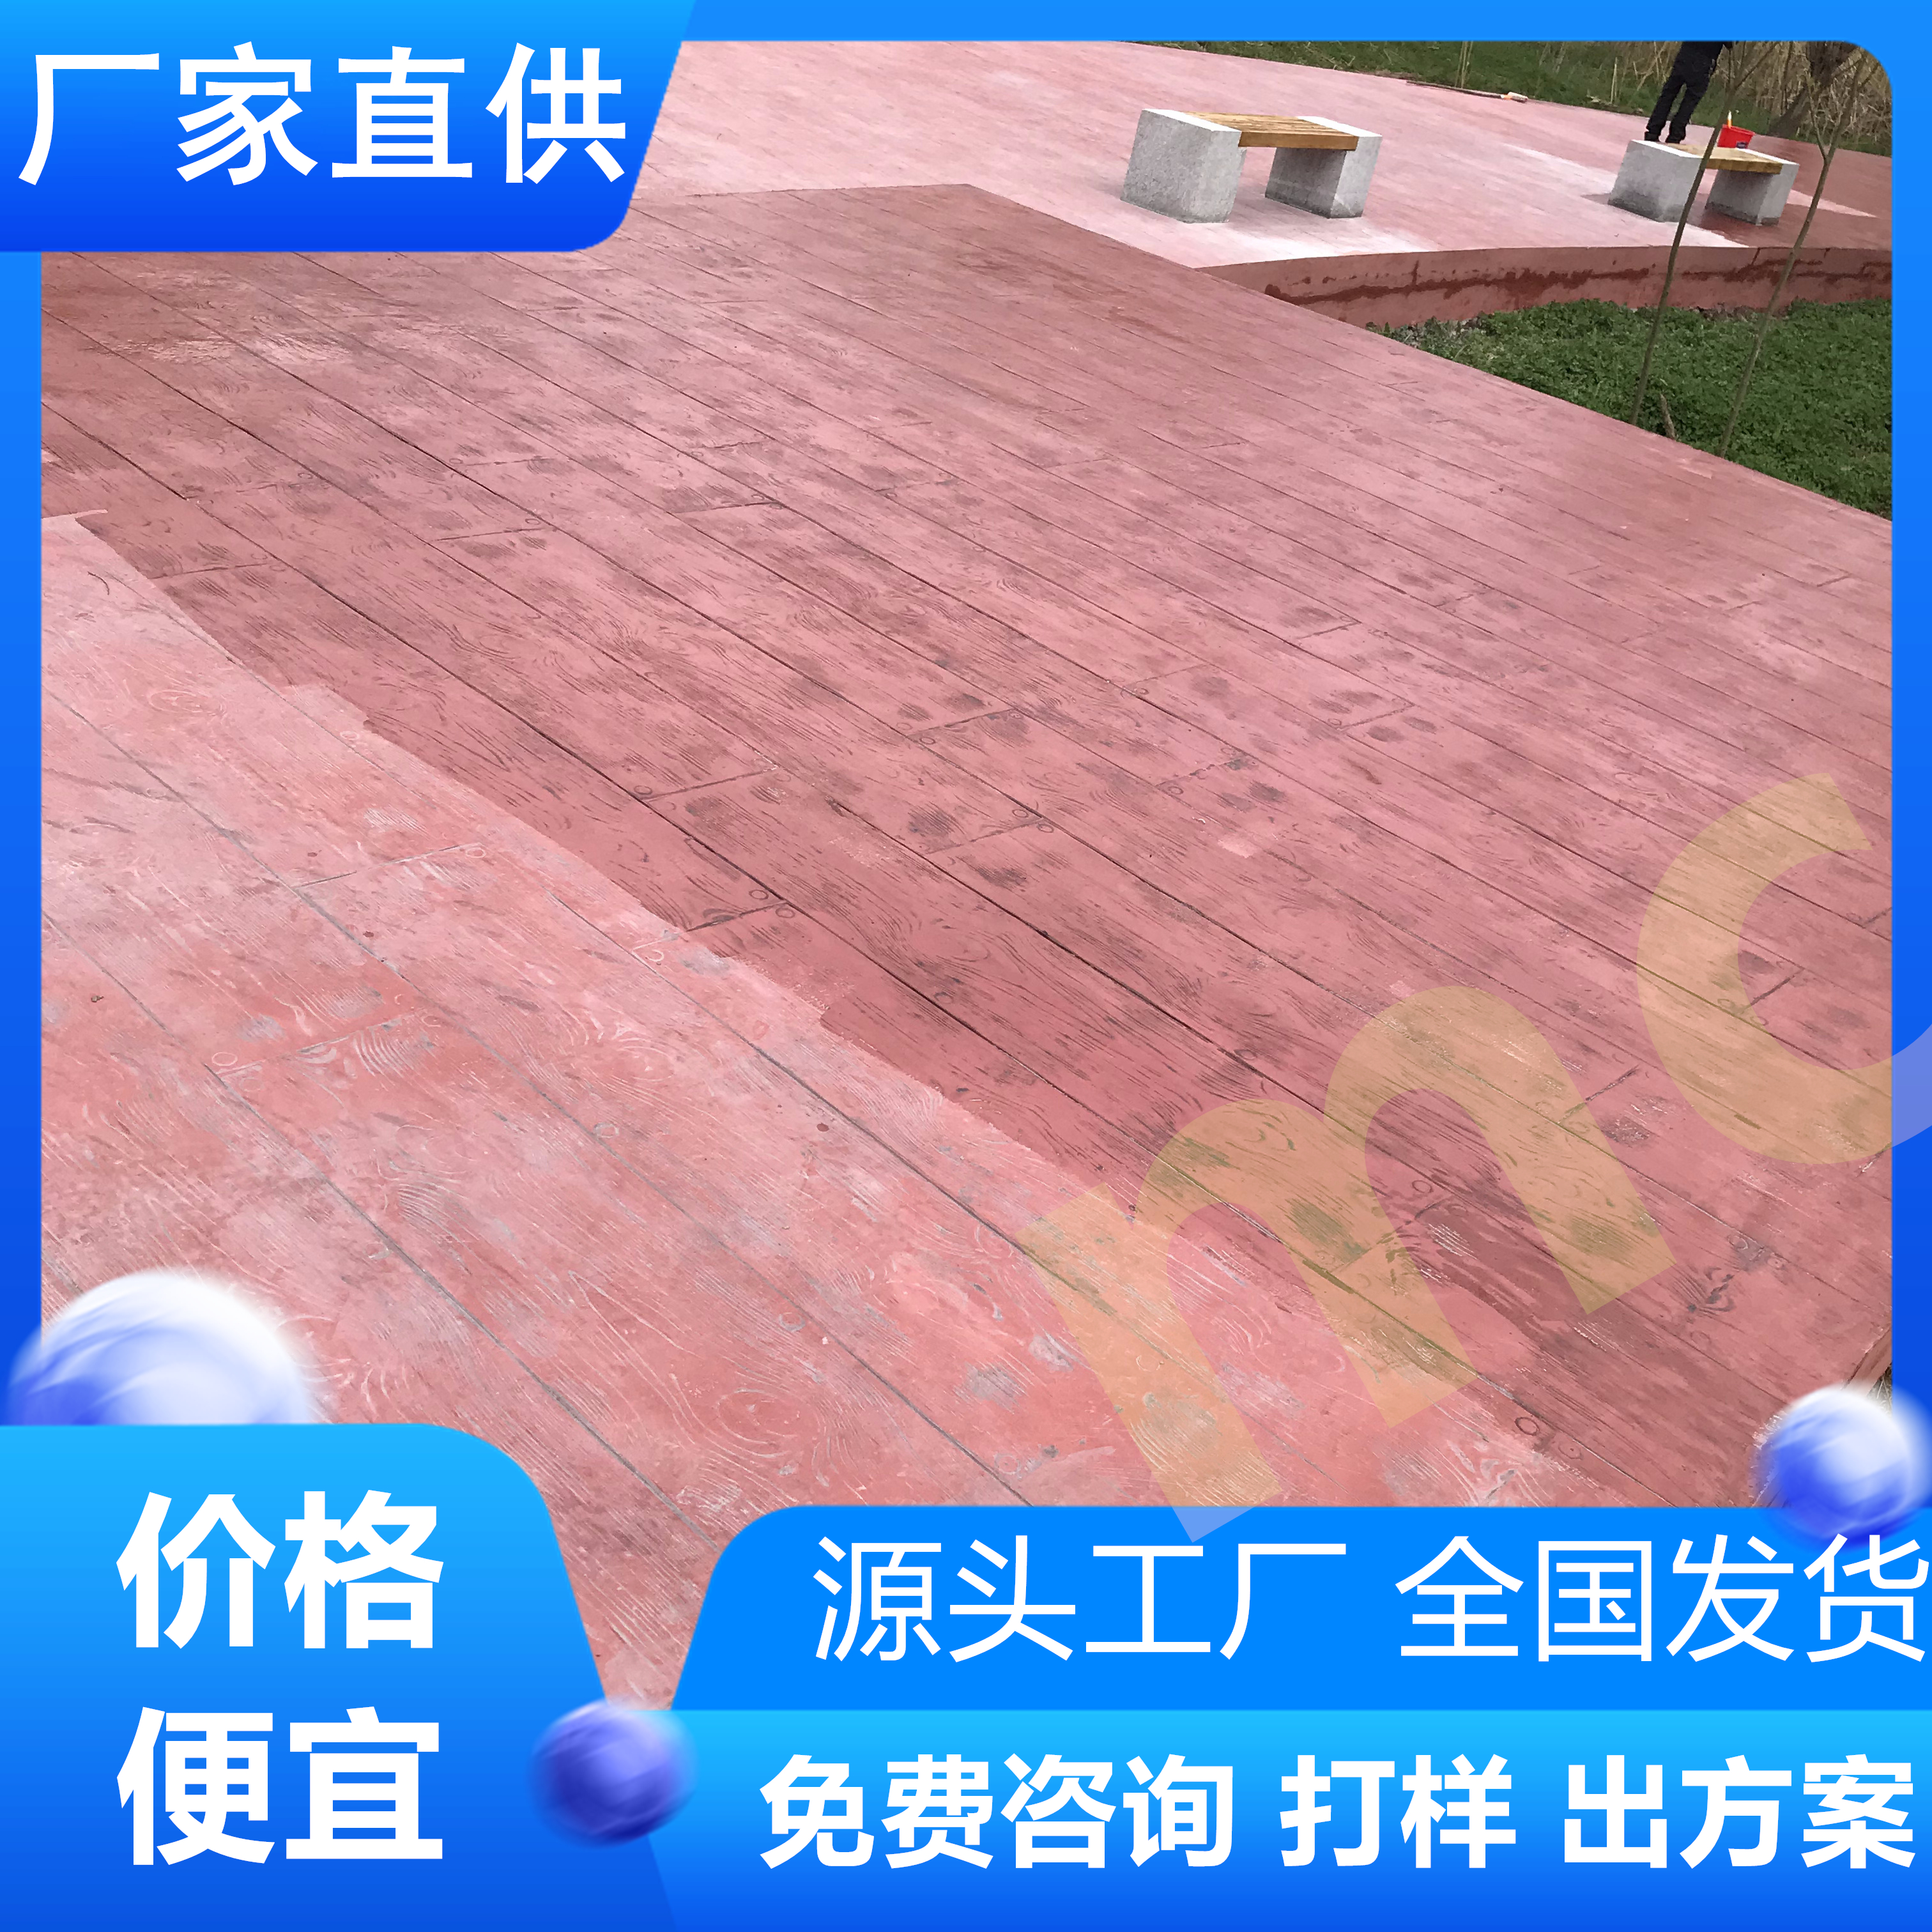 安徽淮南水泥压印地坪提供材料技术指导-厂家直供